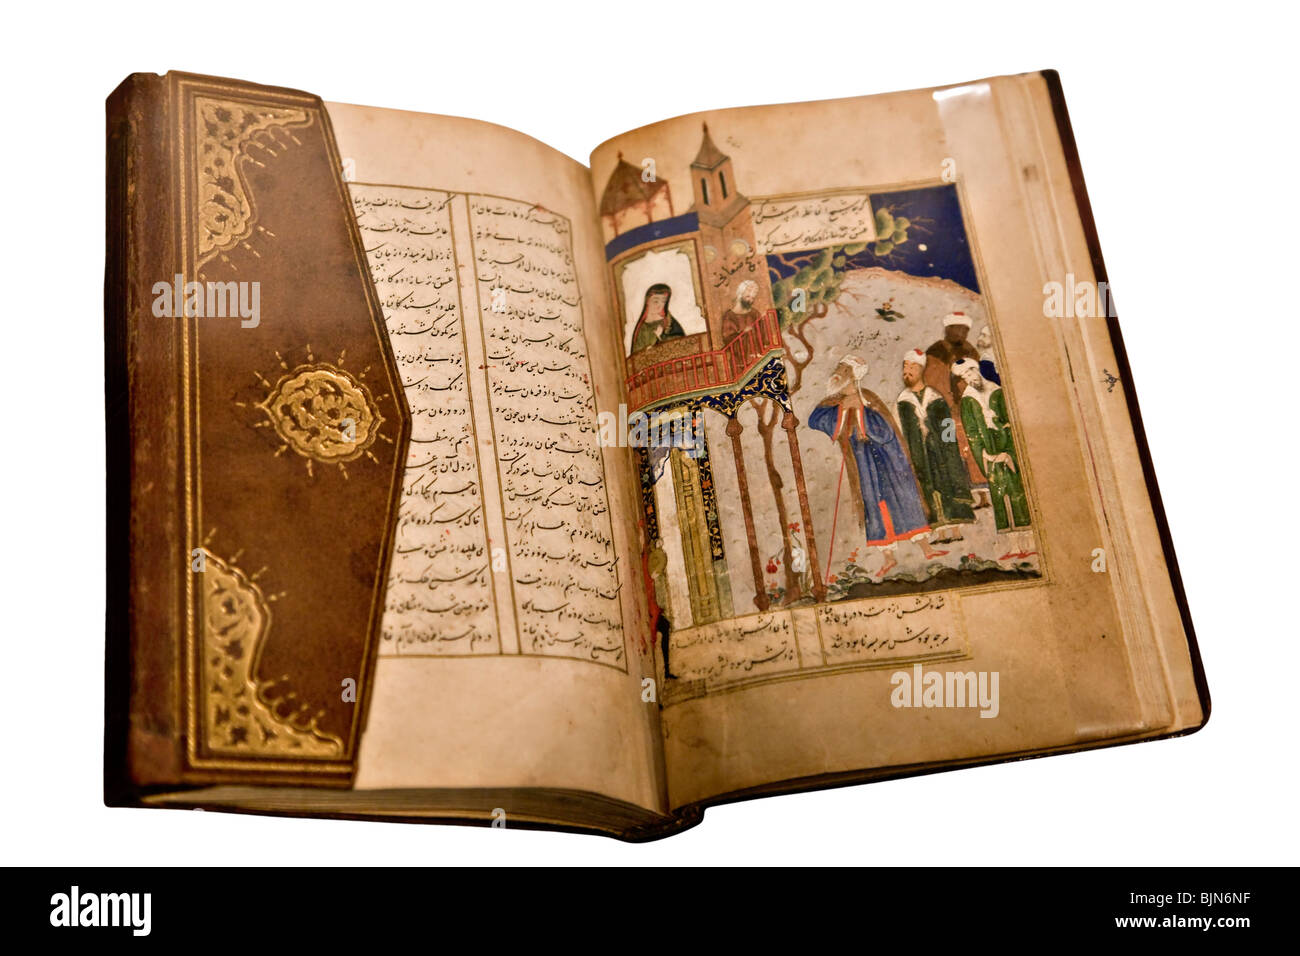 Santo vecchio libro islamico di anno 1400 Foto Stock